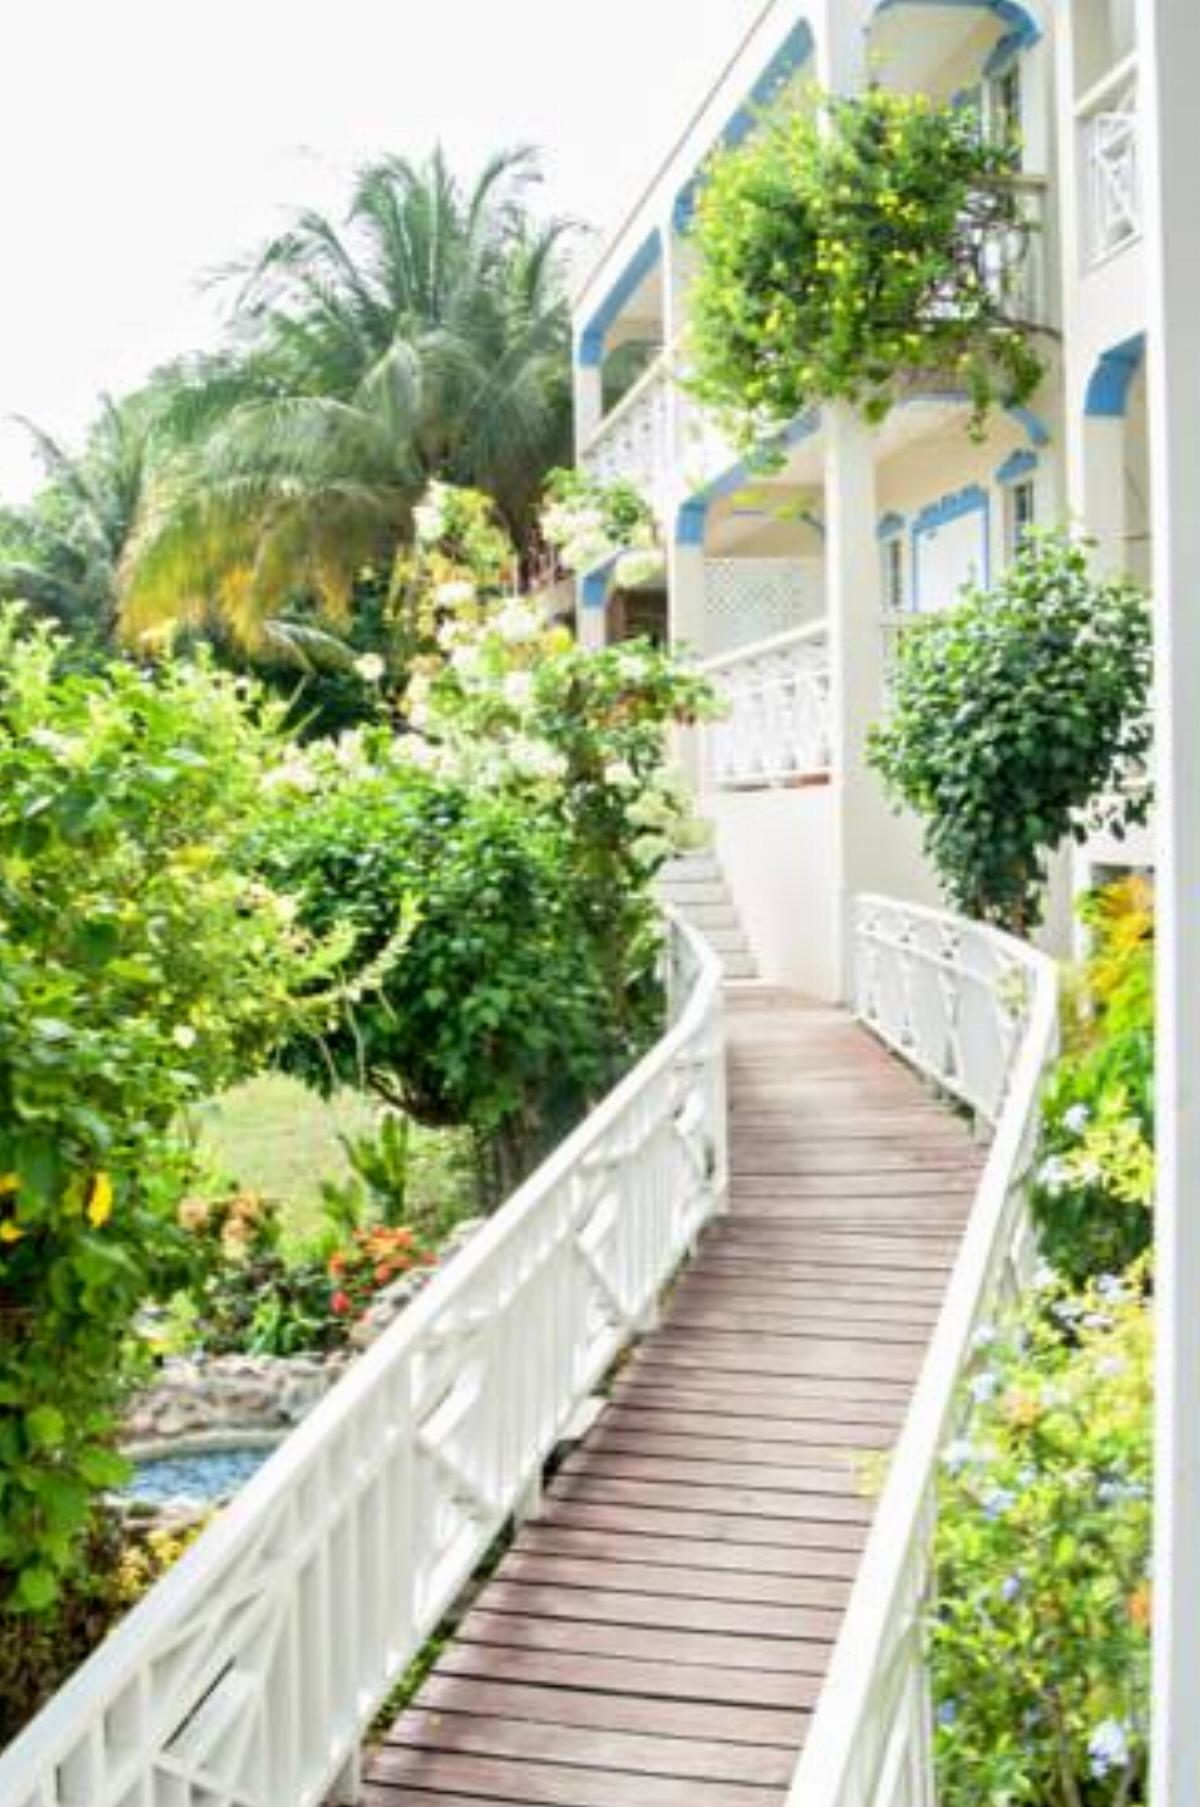 Alizé Inn Hotel Gros Islet Saint Lucia